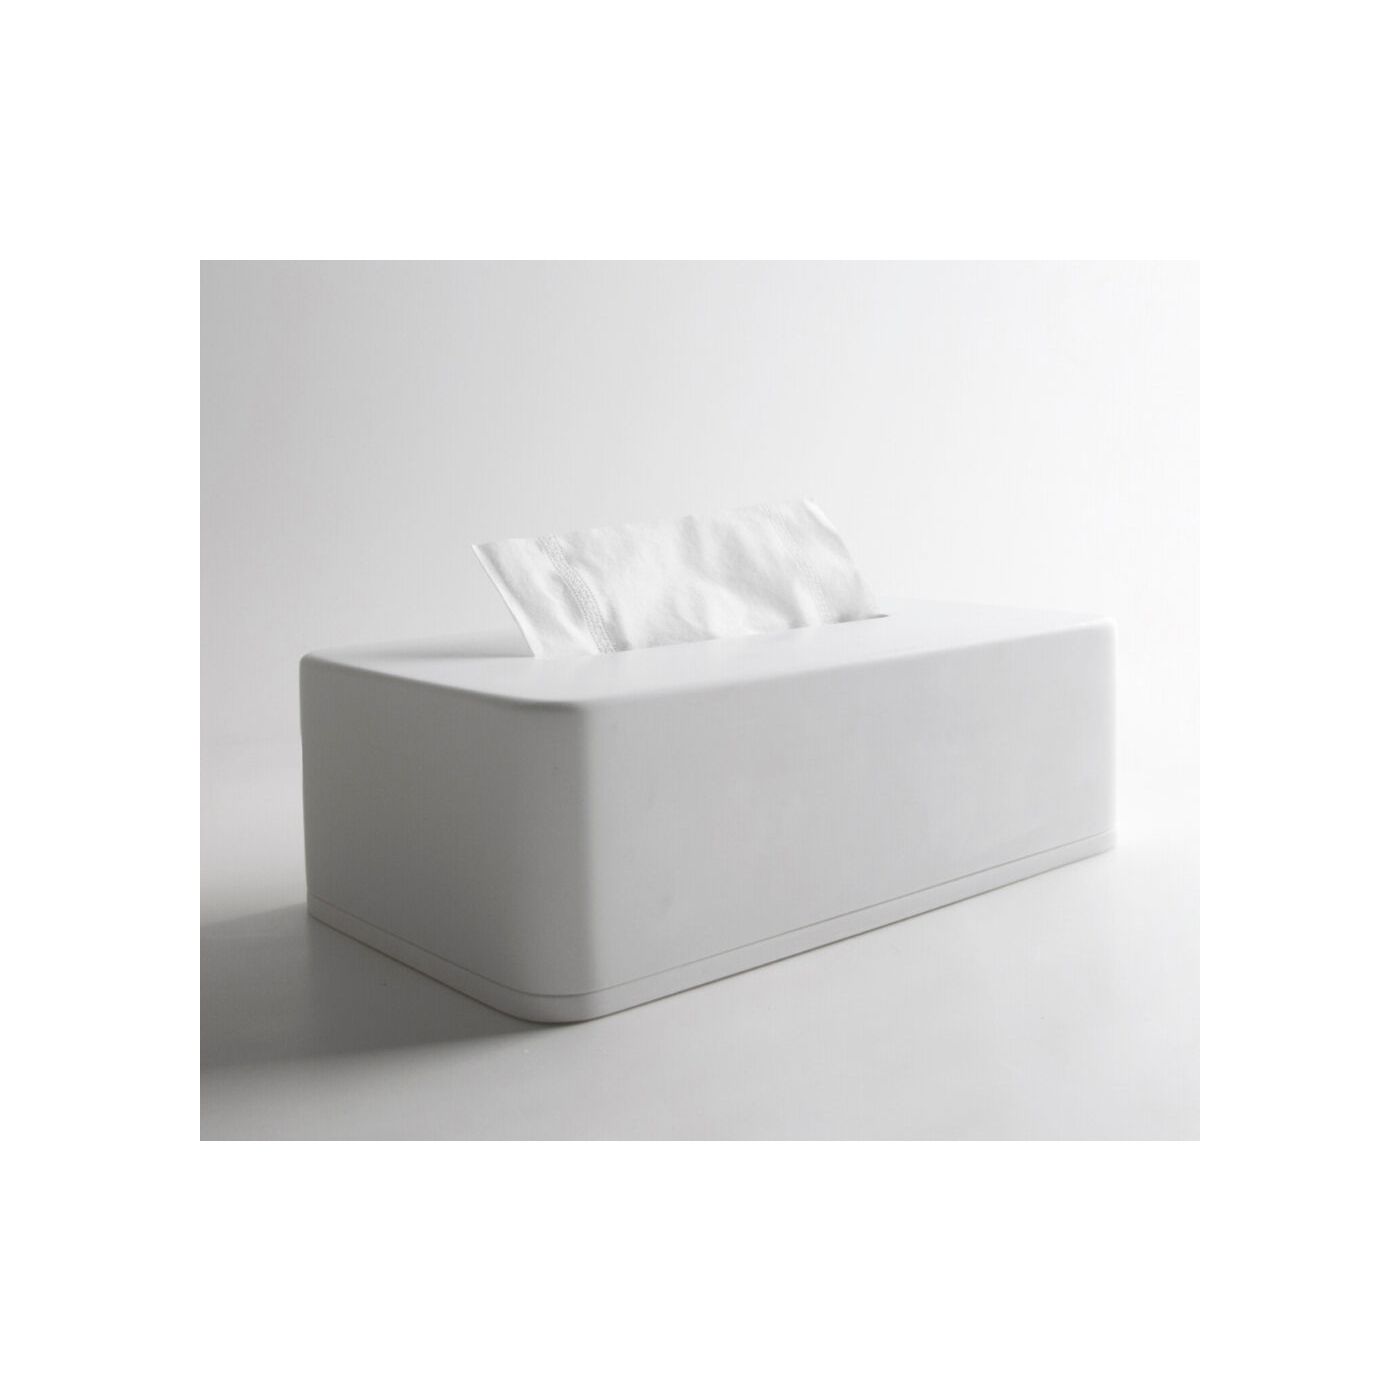 Ideavit Solidcase keramische tissue doos 12,5x23,5 mat wit